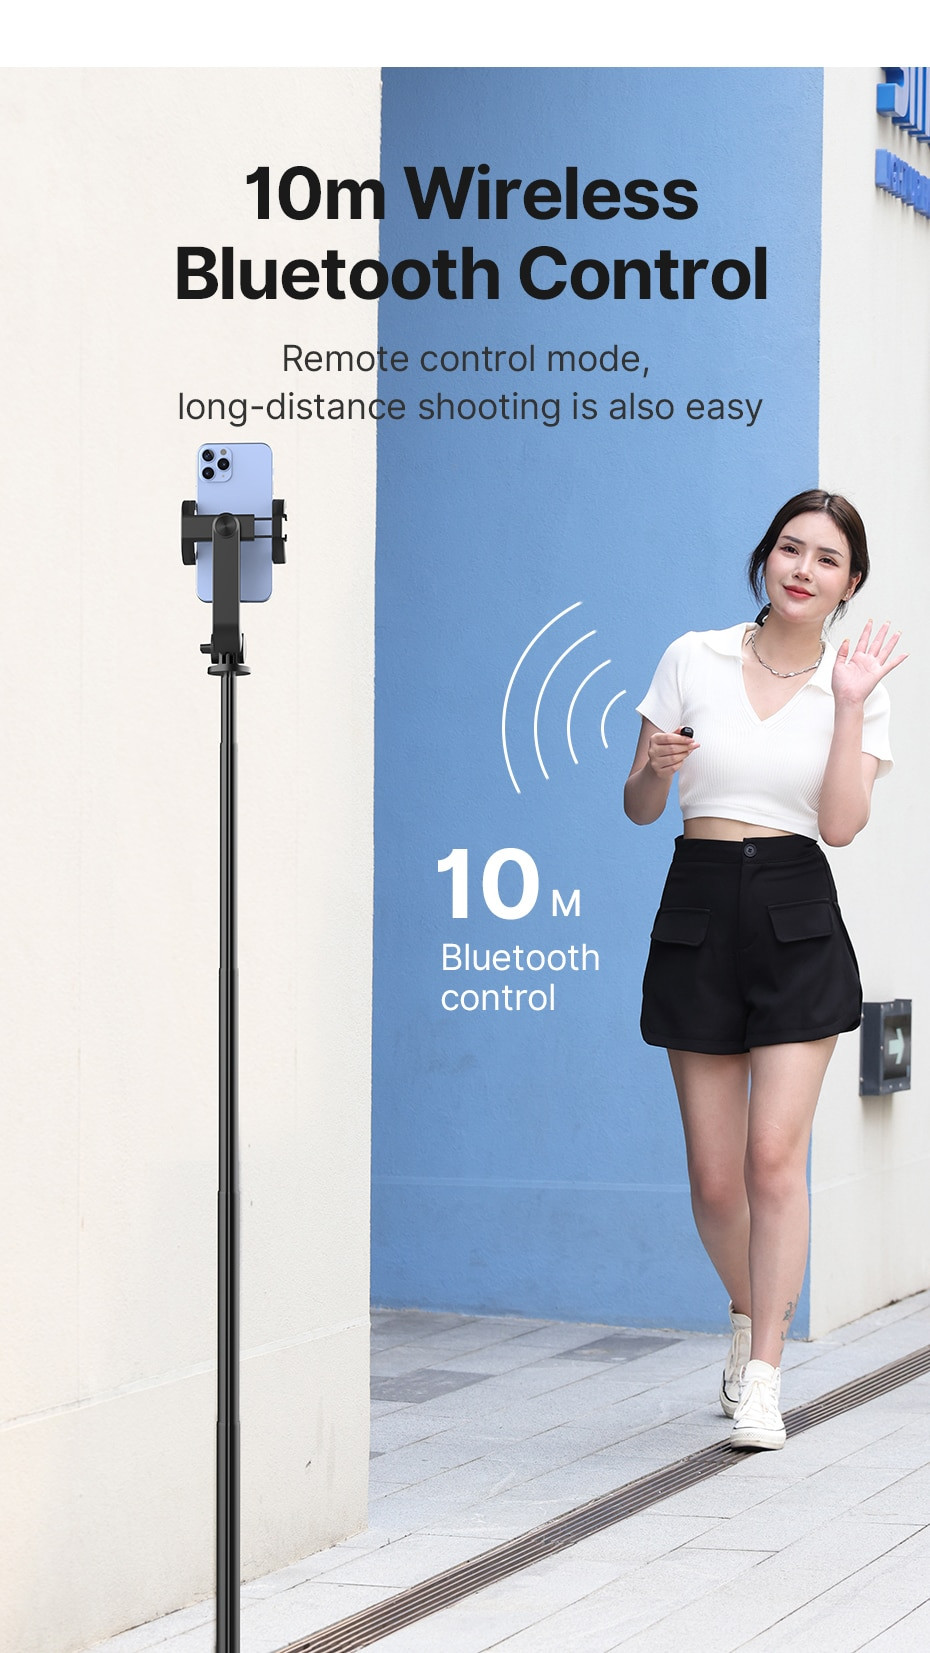 ULANZI SK-03 - Chân Tripod Kèm Remote Bluetooth Dành Cho Điện Thoại - Hàng Chính Hãng